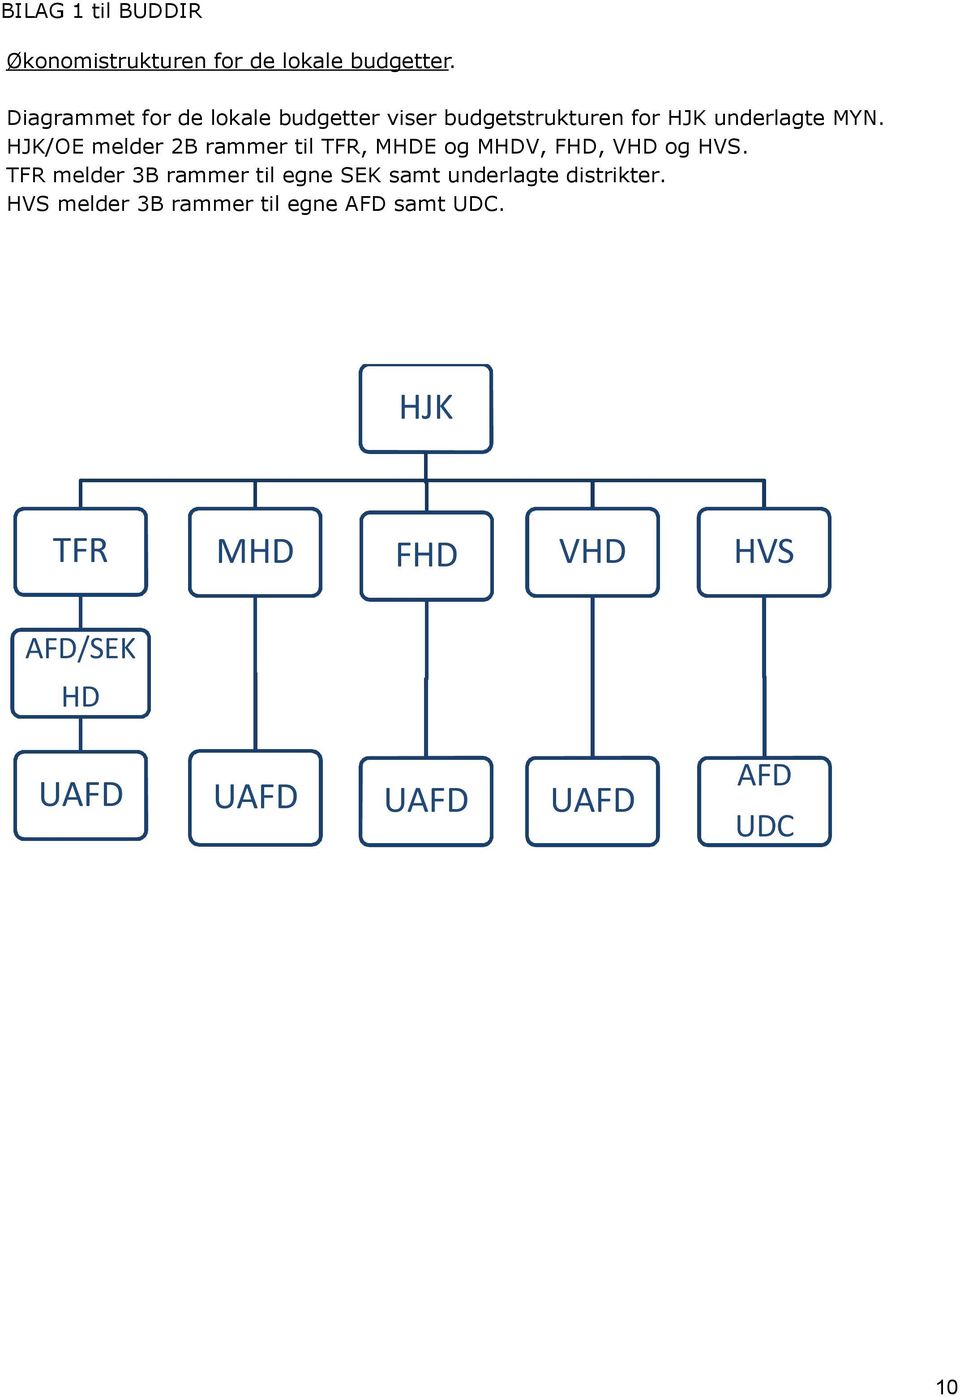 HJK/OE melder 2B rammer til TFR, MHDE og MHDV, FHD, VHD og HVS.